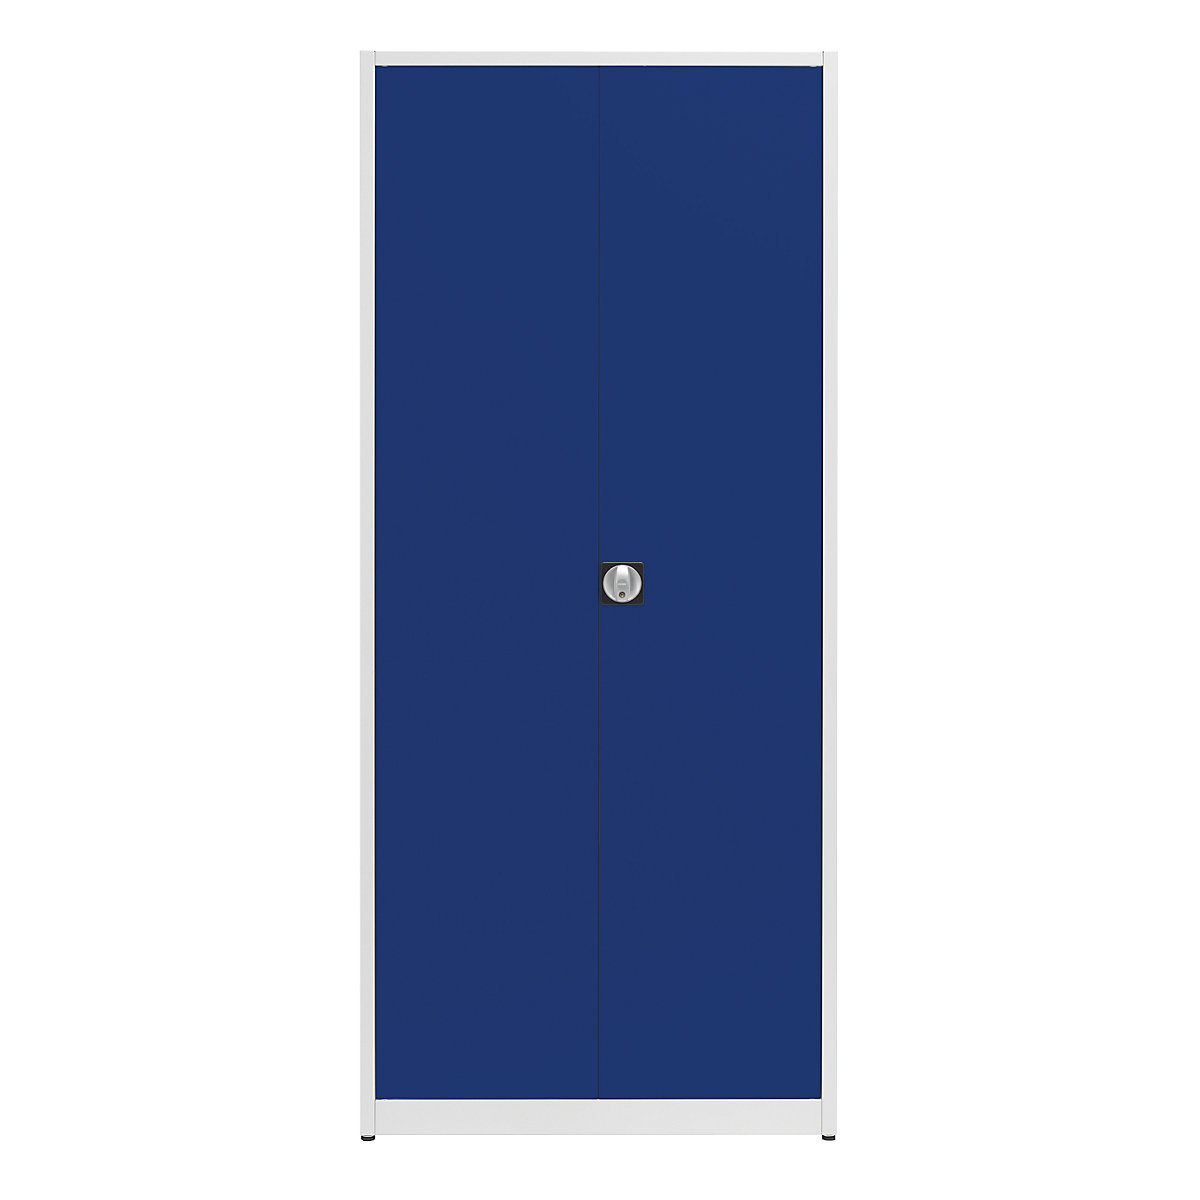 Universal cupboard, extra high – mauser, HxWxD 2200 x 950 x 420 mm, light grey / ultramarine blue-12